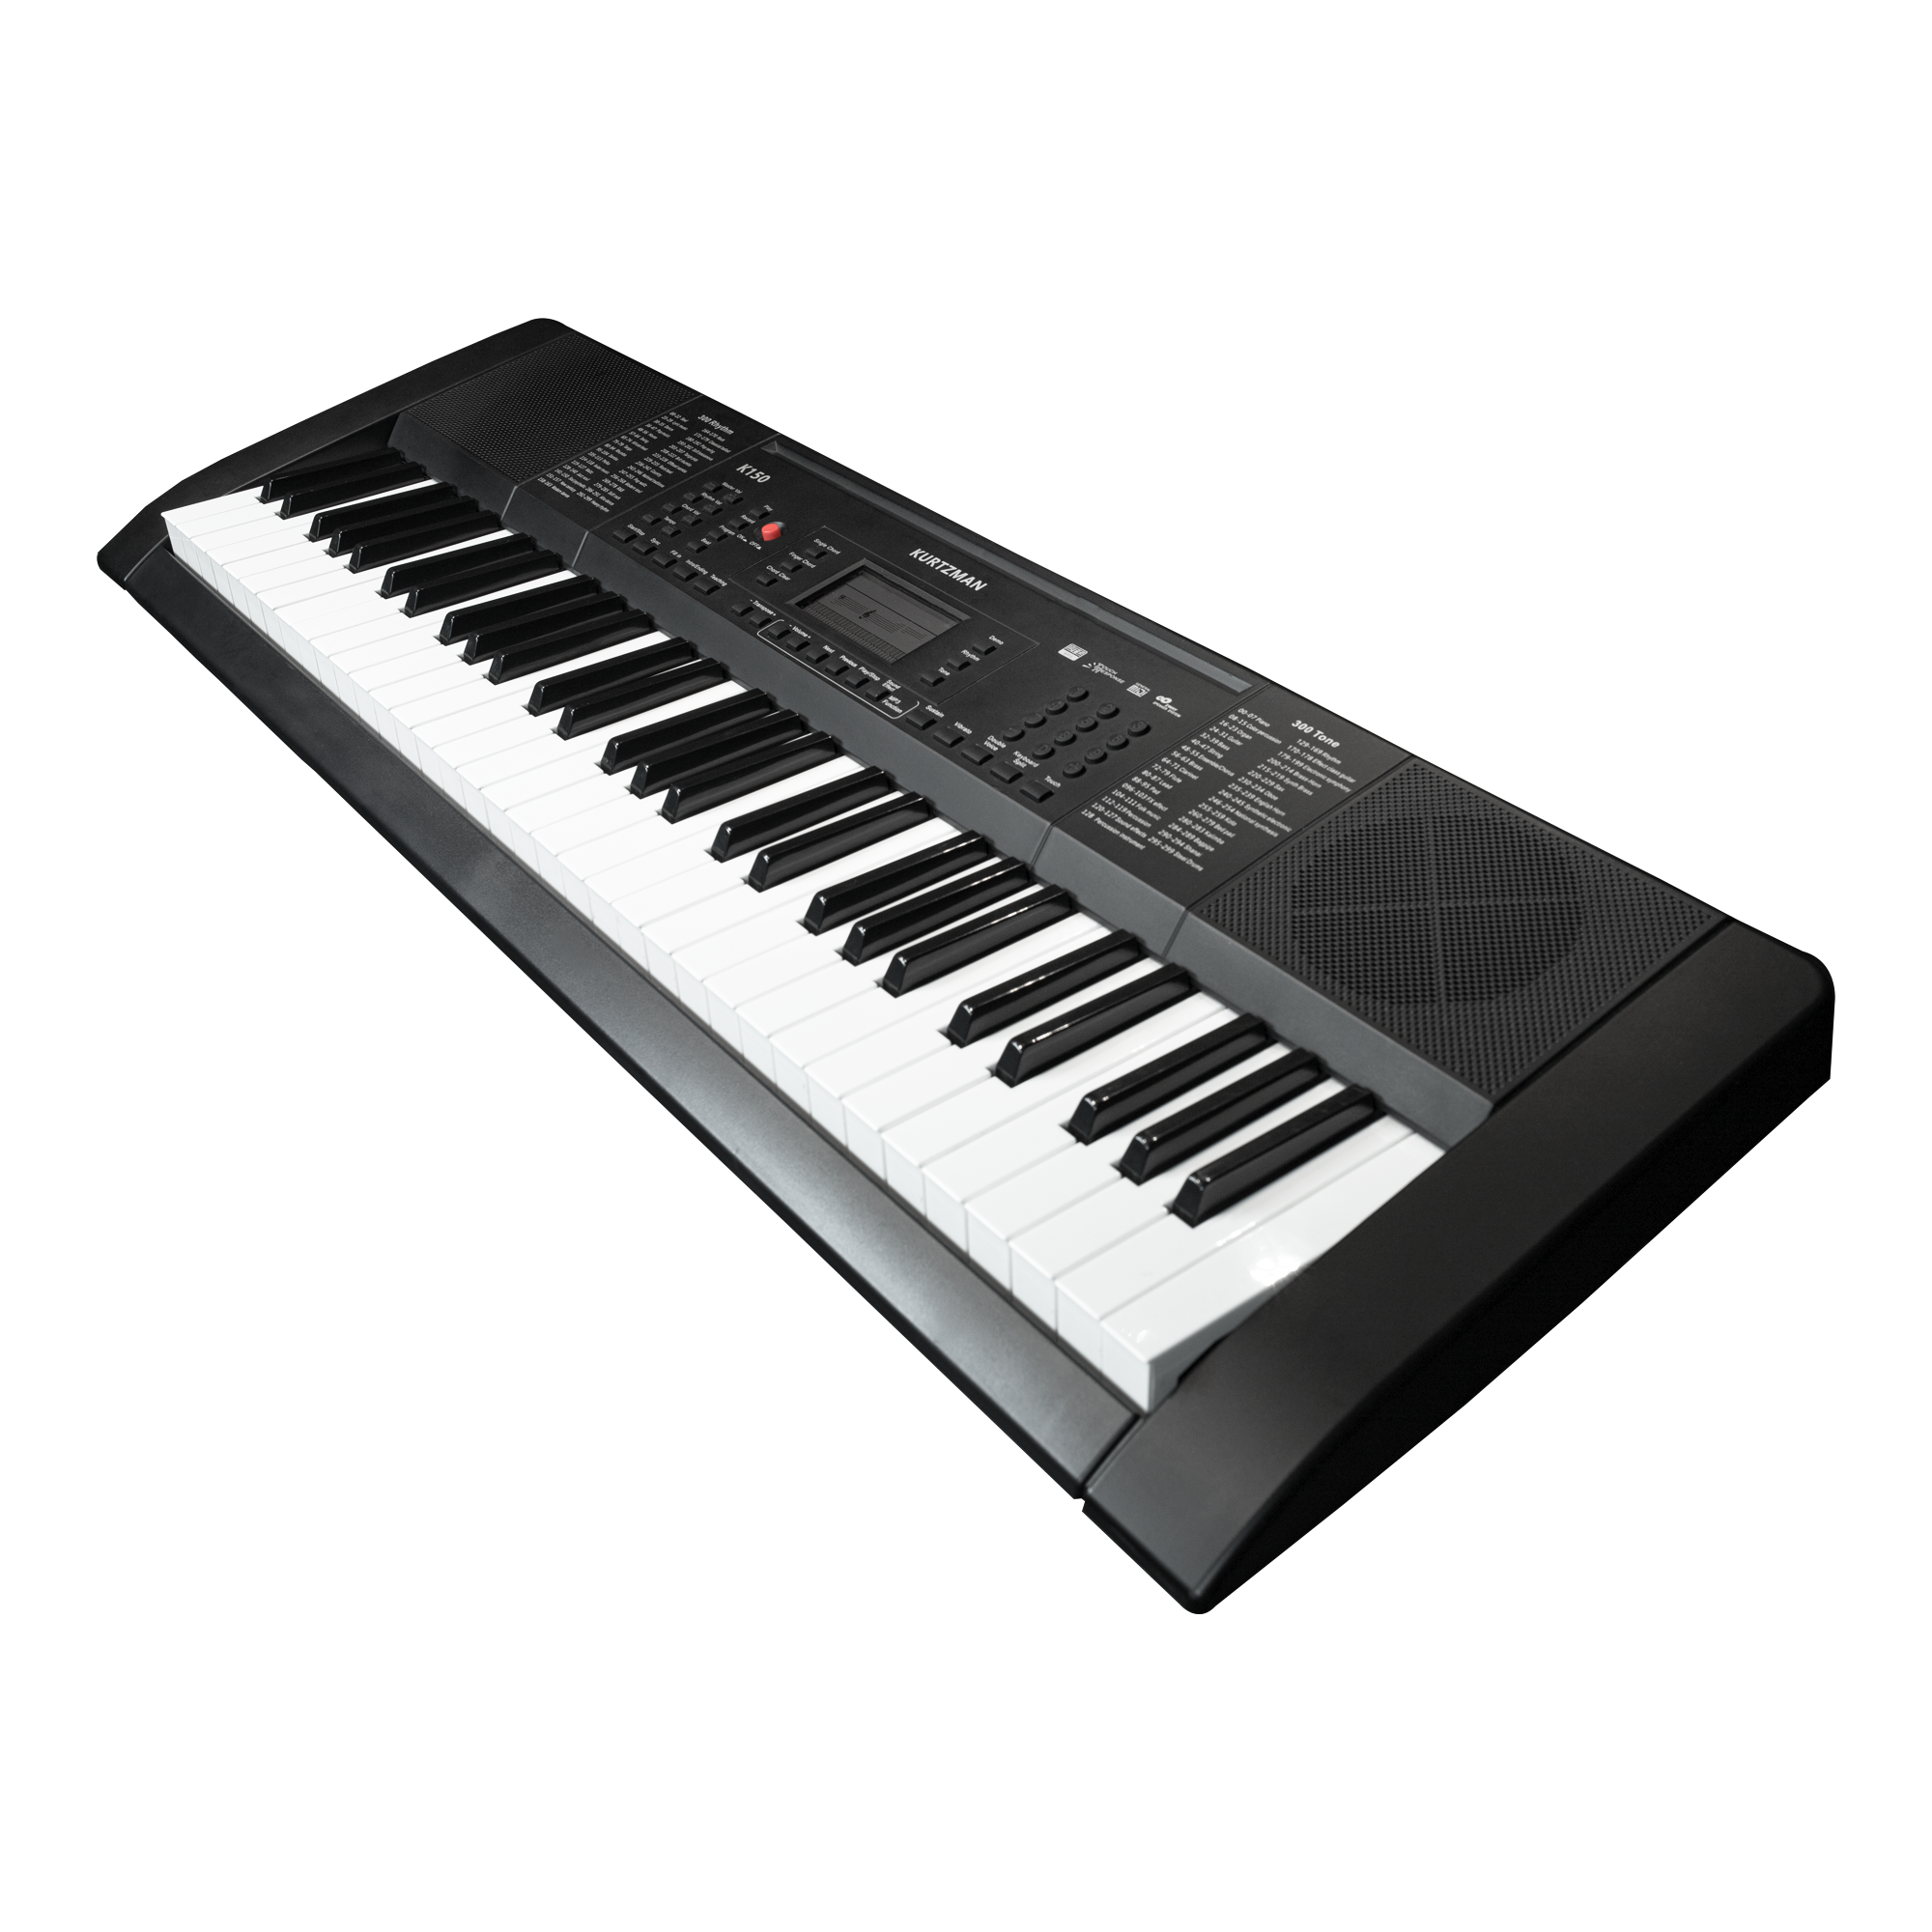 Đàn Organ điện tử, Portable Keyboard - Kzm Kurtzman K150 - Black, best keyboard for beginner - Hàng chính hãng